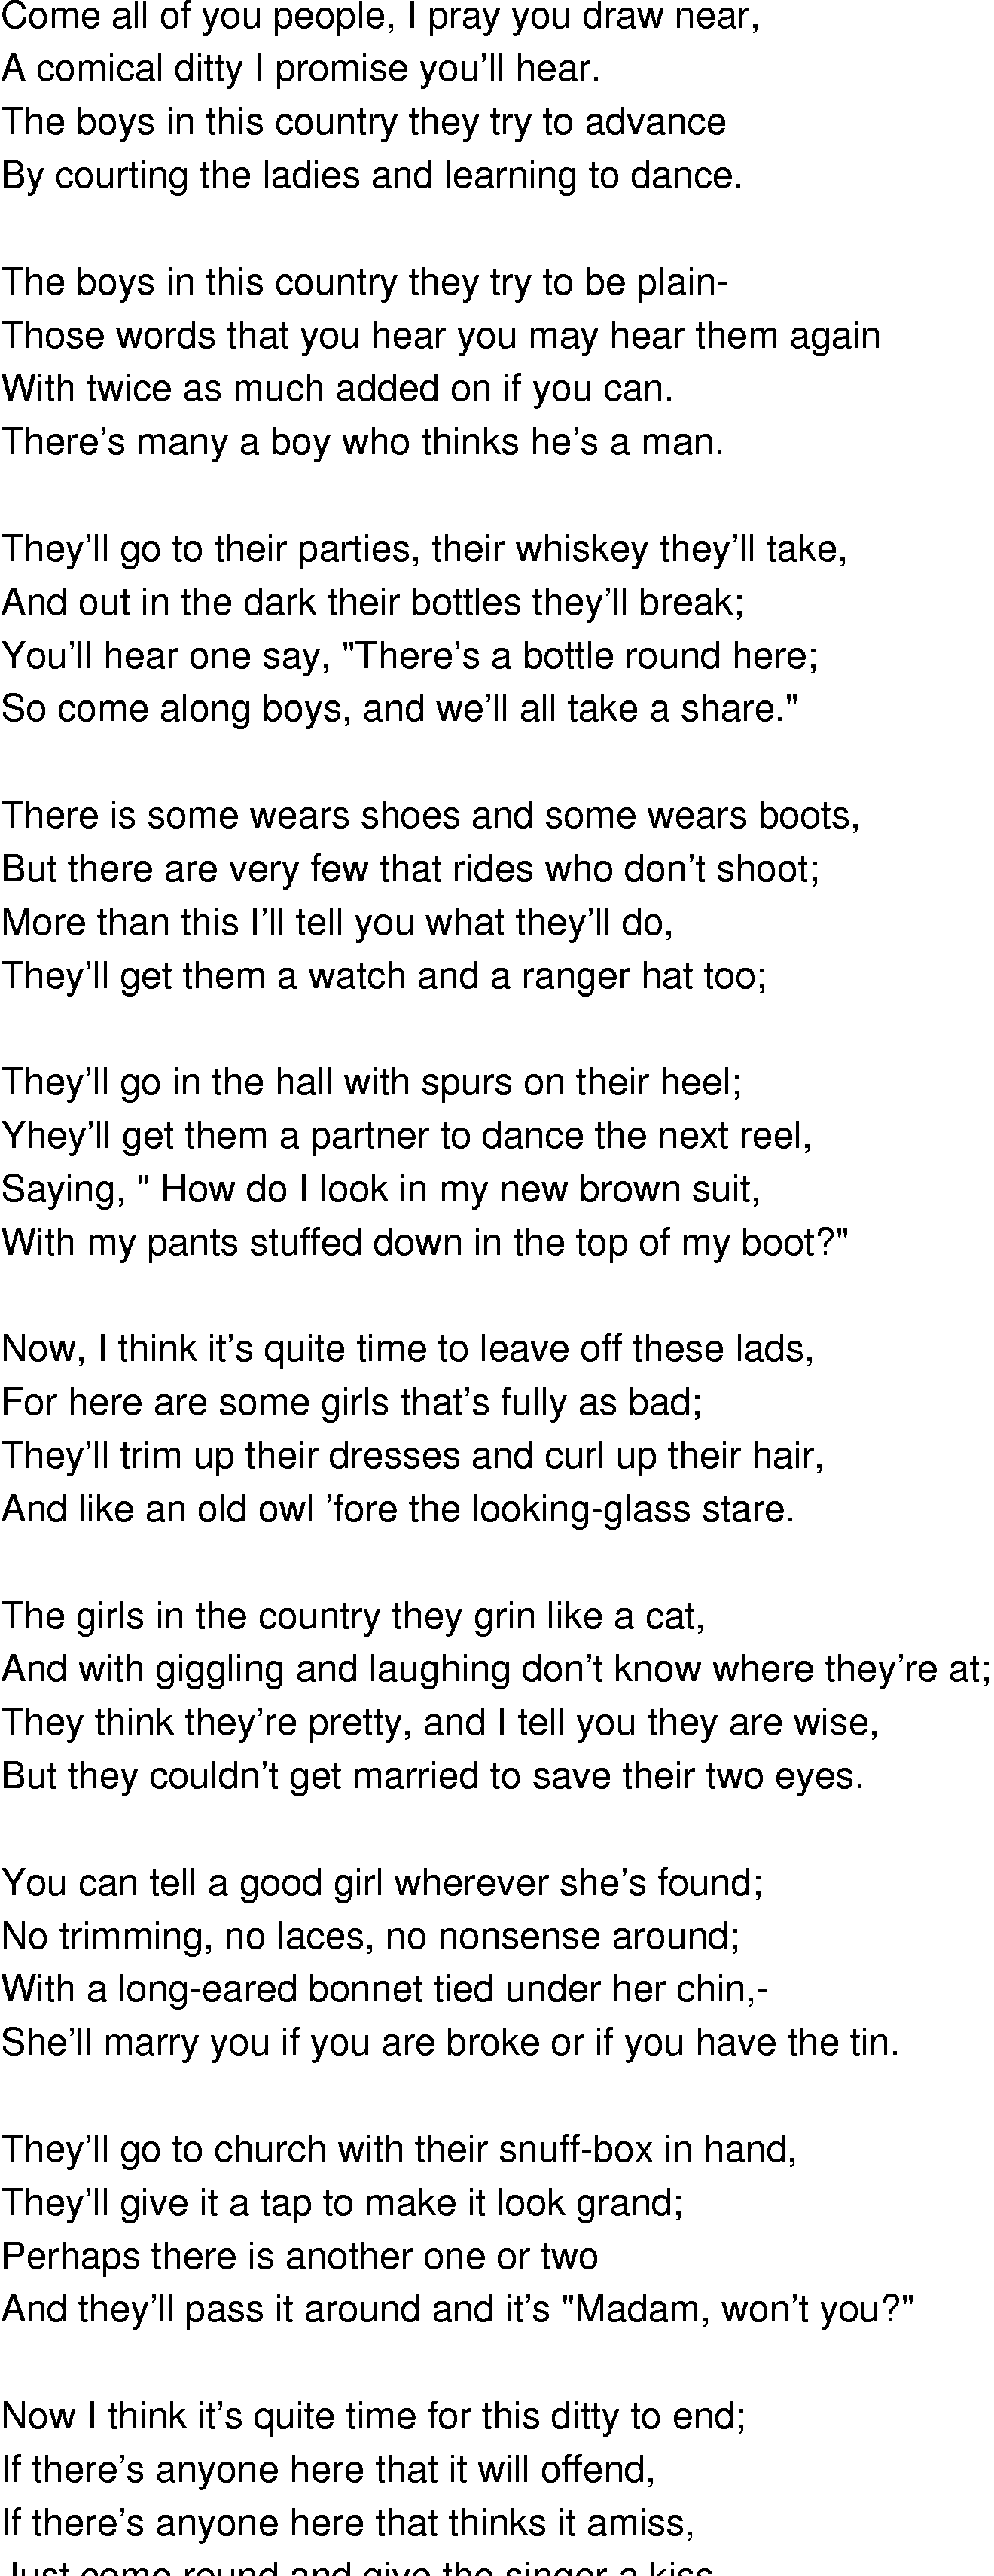 Old-Time (oldtimey) Song Lyrics - arizona boys and girls